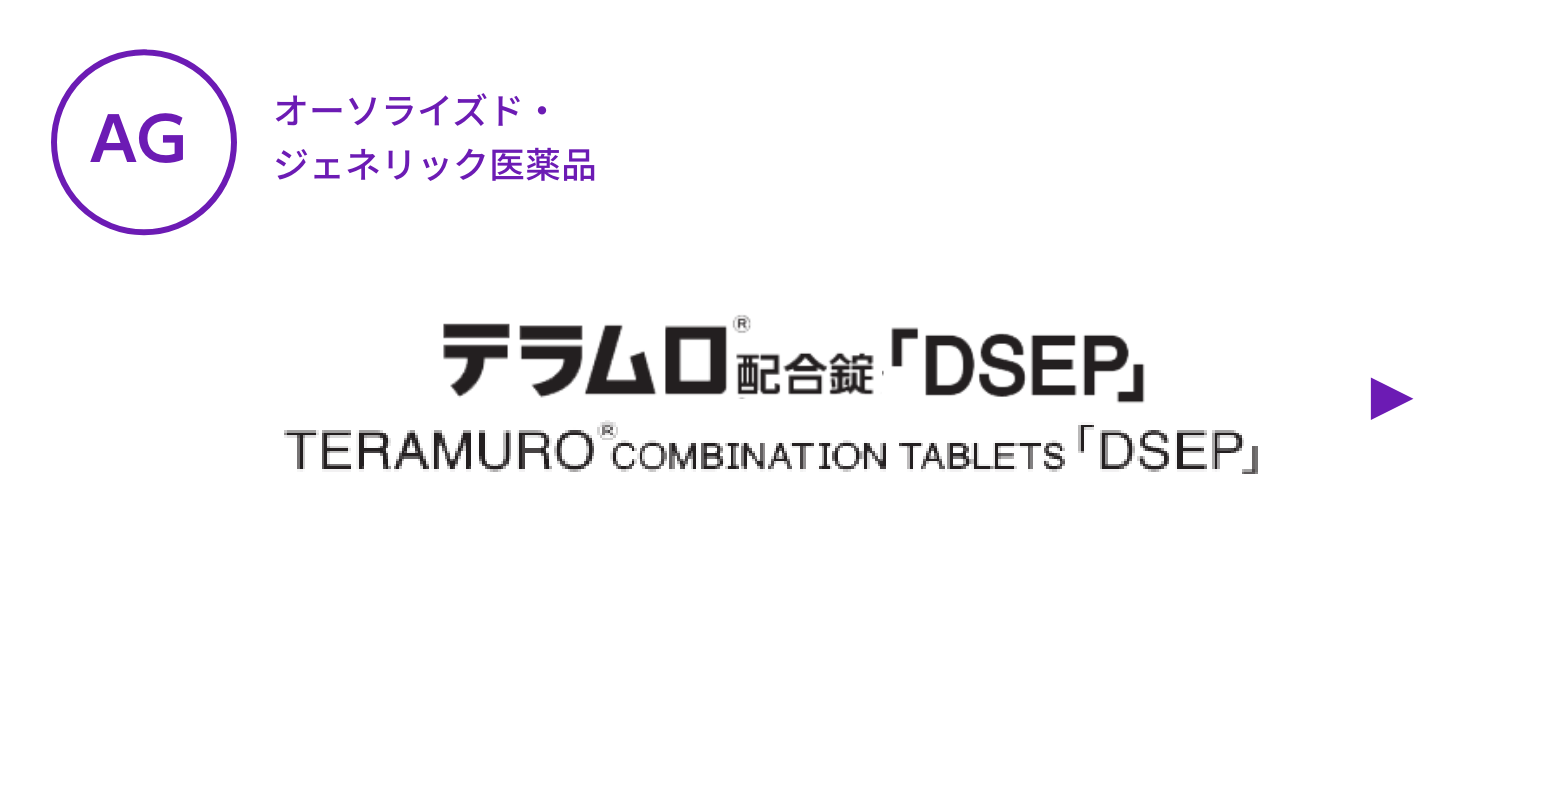 【AG】テラムロ配合錠「DSEP」